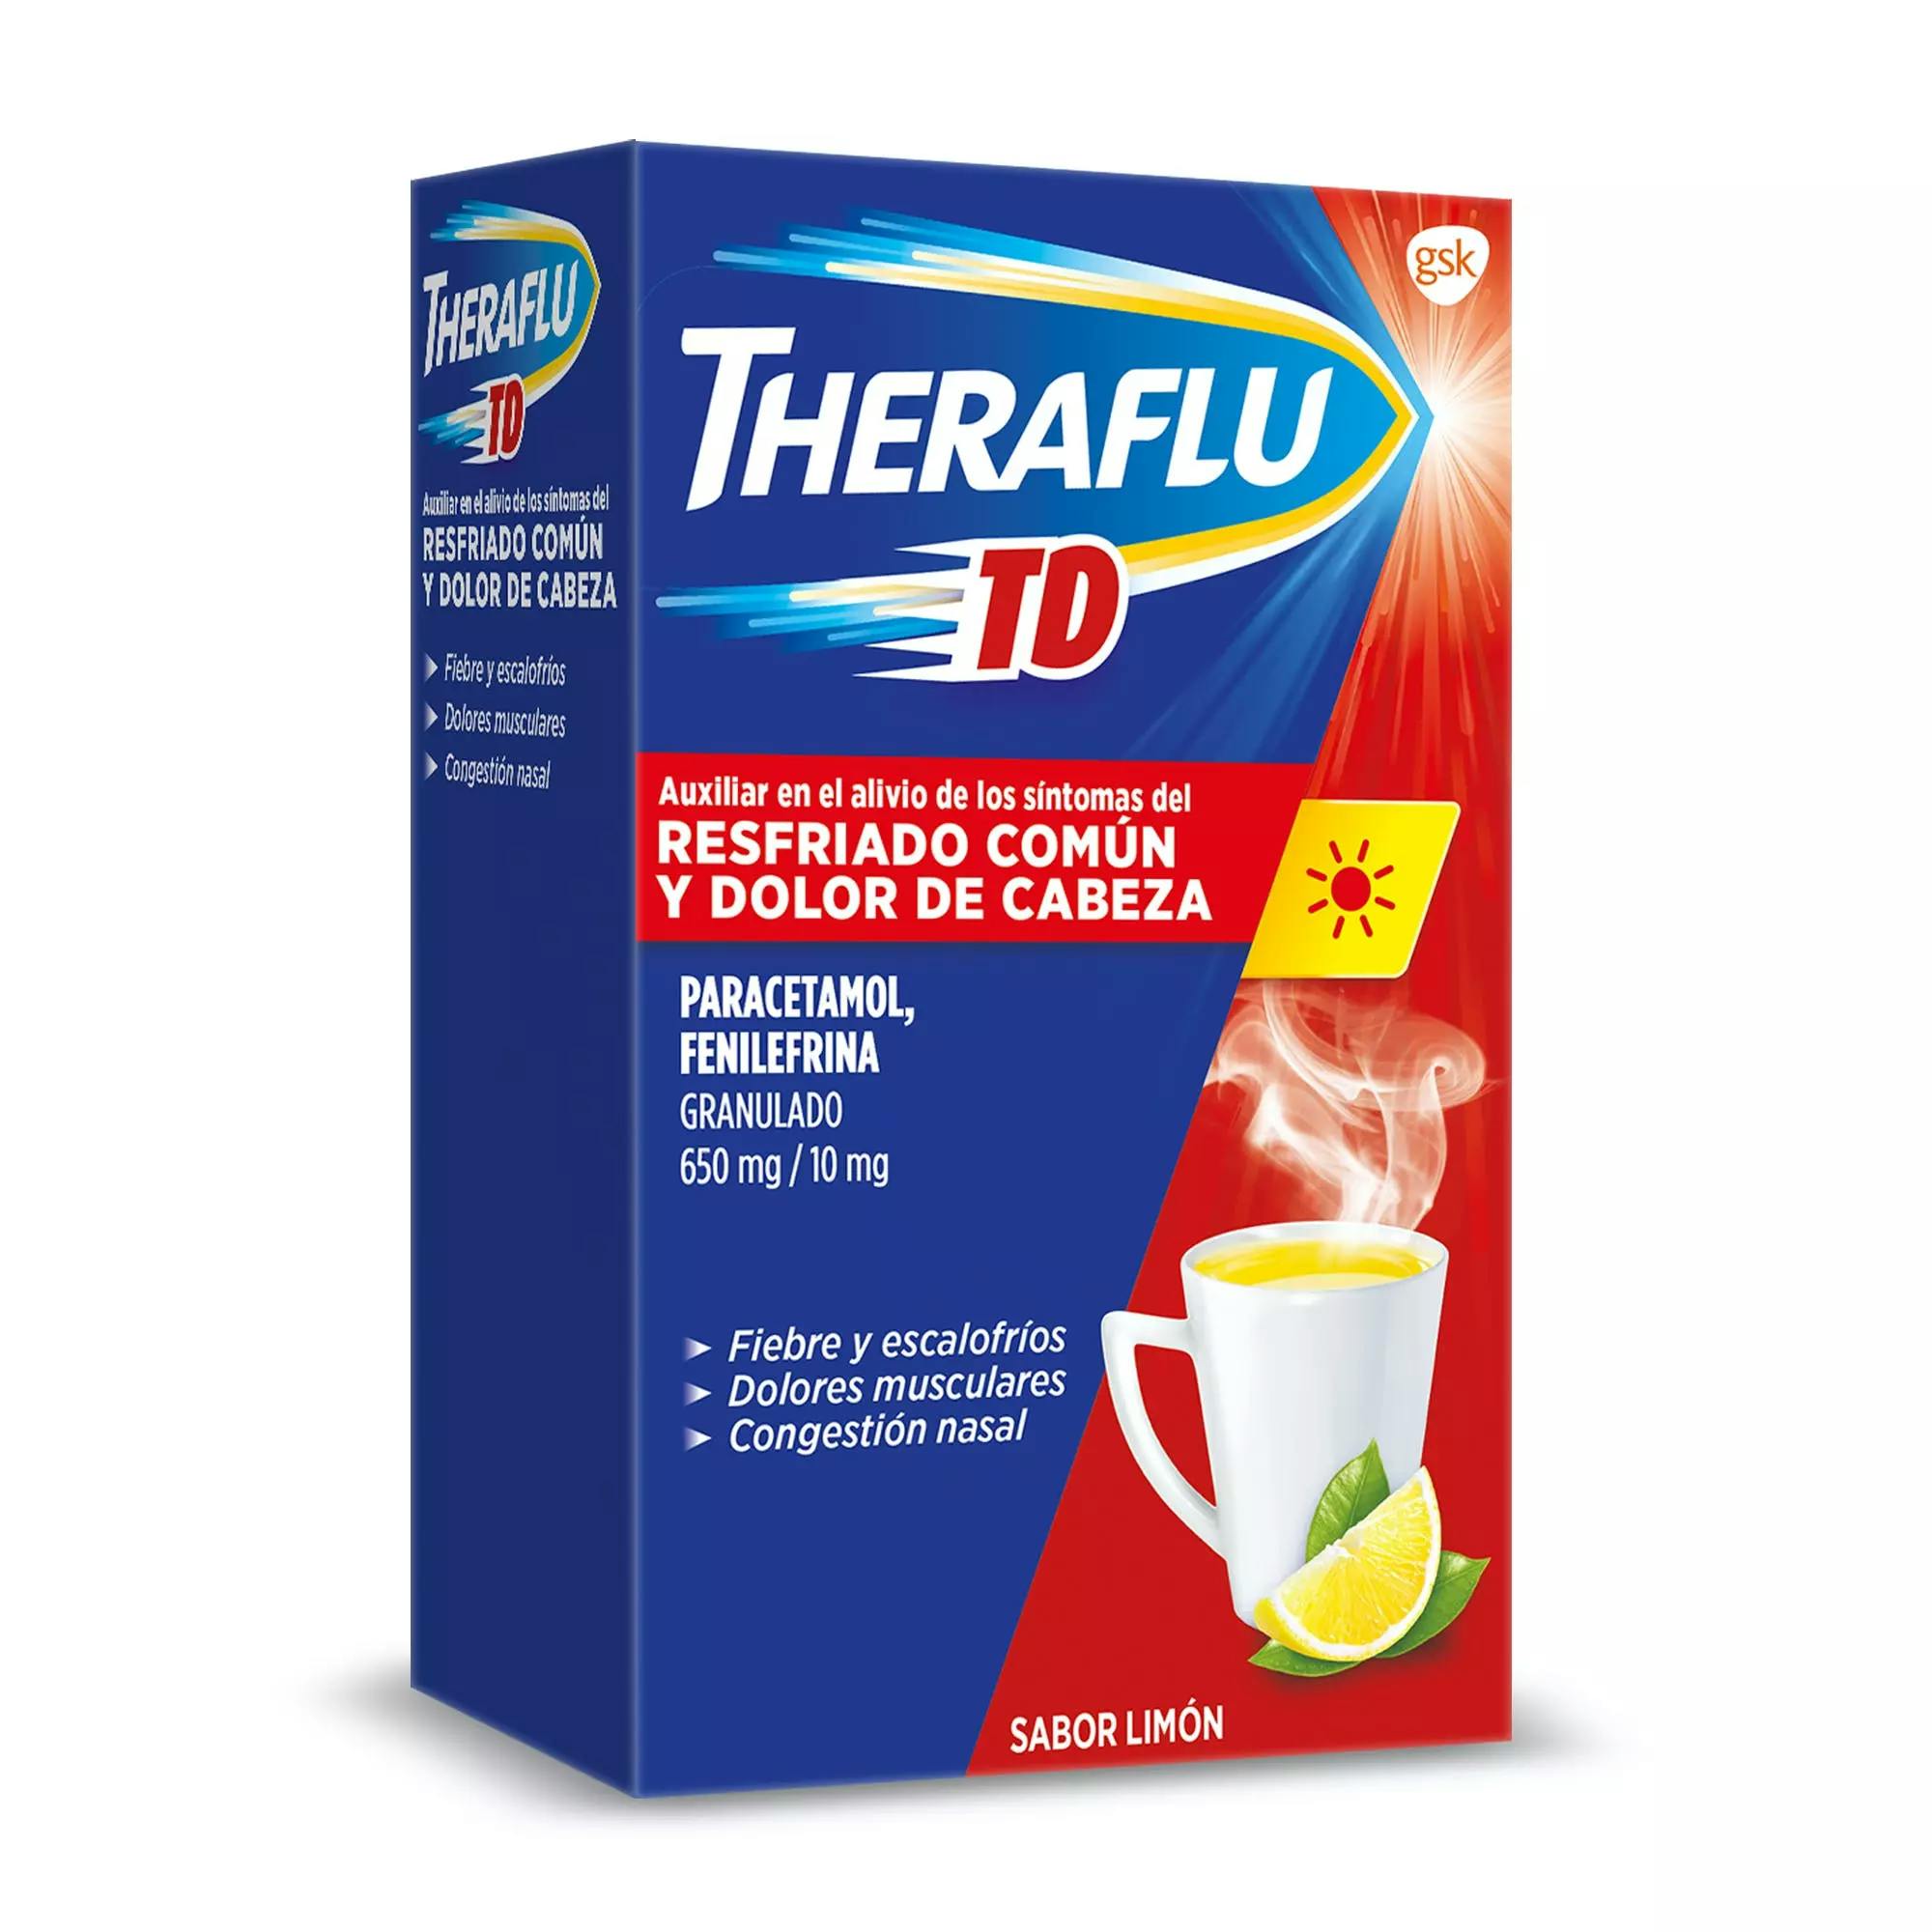 Theraflu TD para un resfriado común y dolor de cabeza